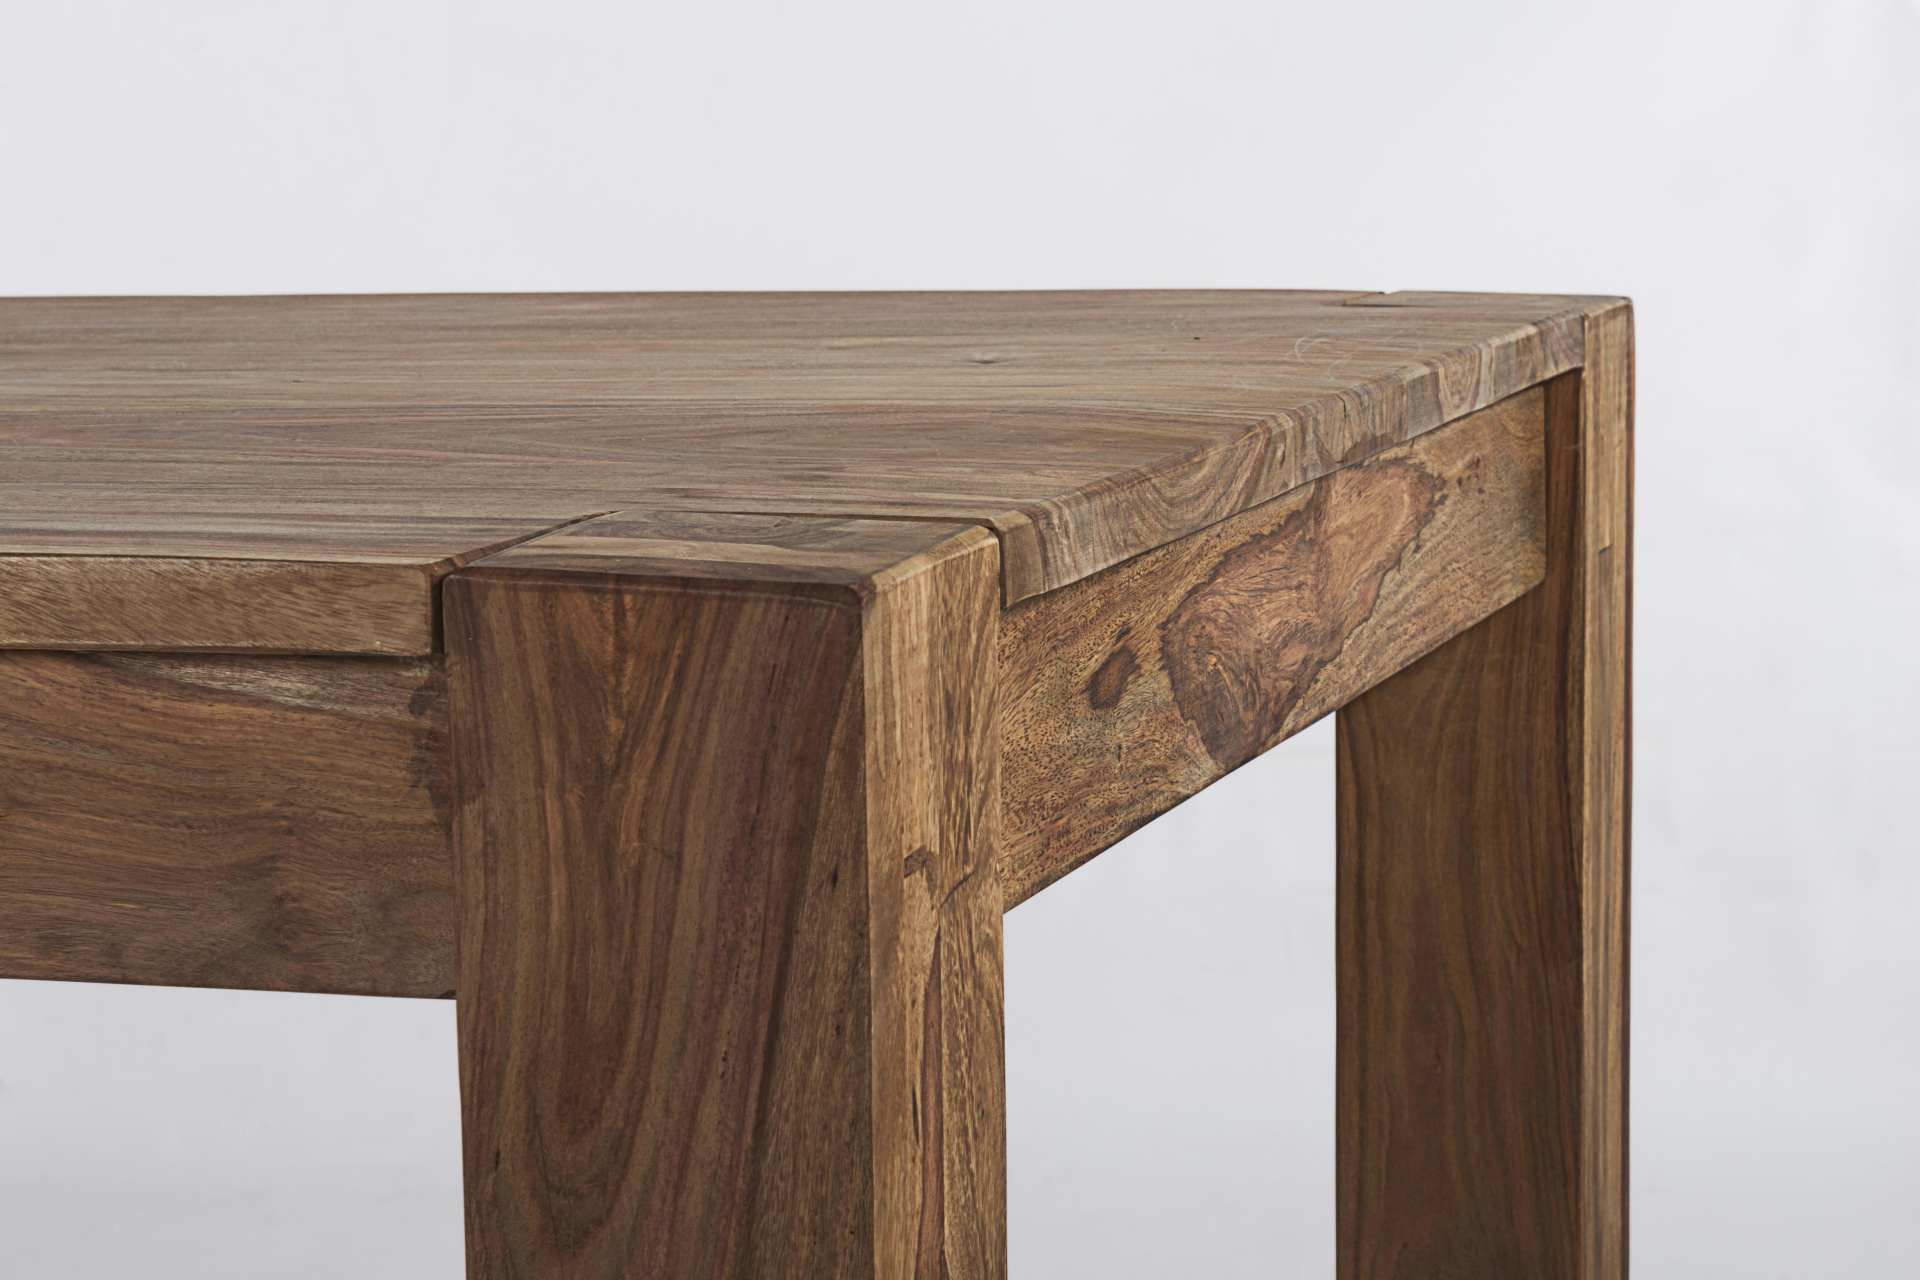 Der Esstisch Salford überzeugt mit seinem klassischem Design. Gefertigt wurde er aus Sheeshamholz, welches einen natürlichen Farbton besitzt. Das Gestell ist auch aus Sheeshamholz. Der Tisch ist ausziehbar von einer Länge von 200 cm auf 260 cm.